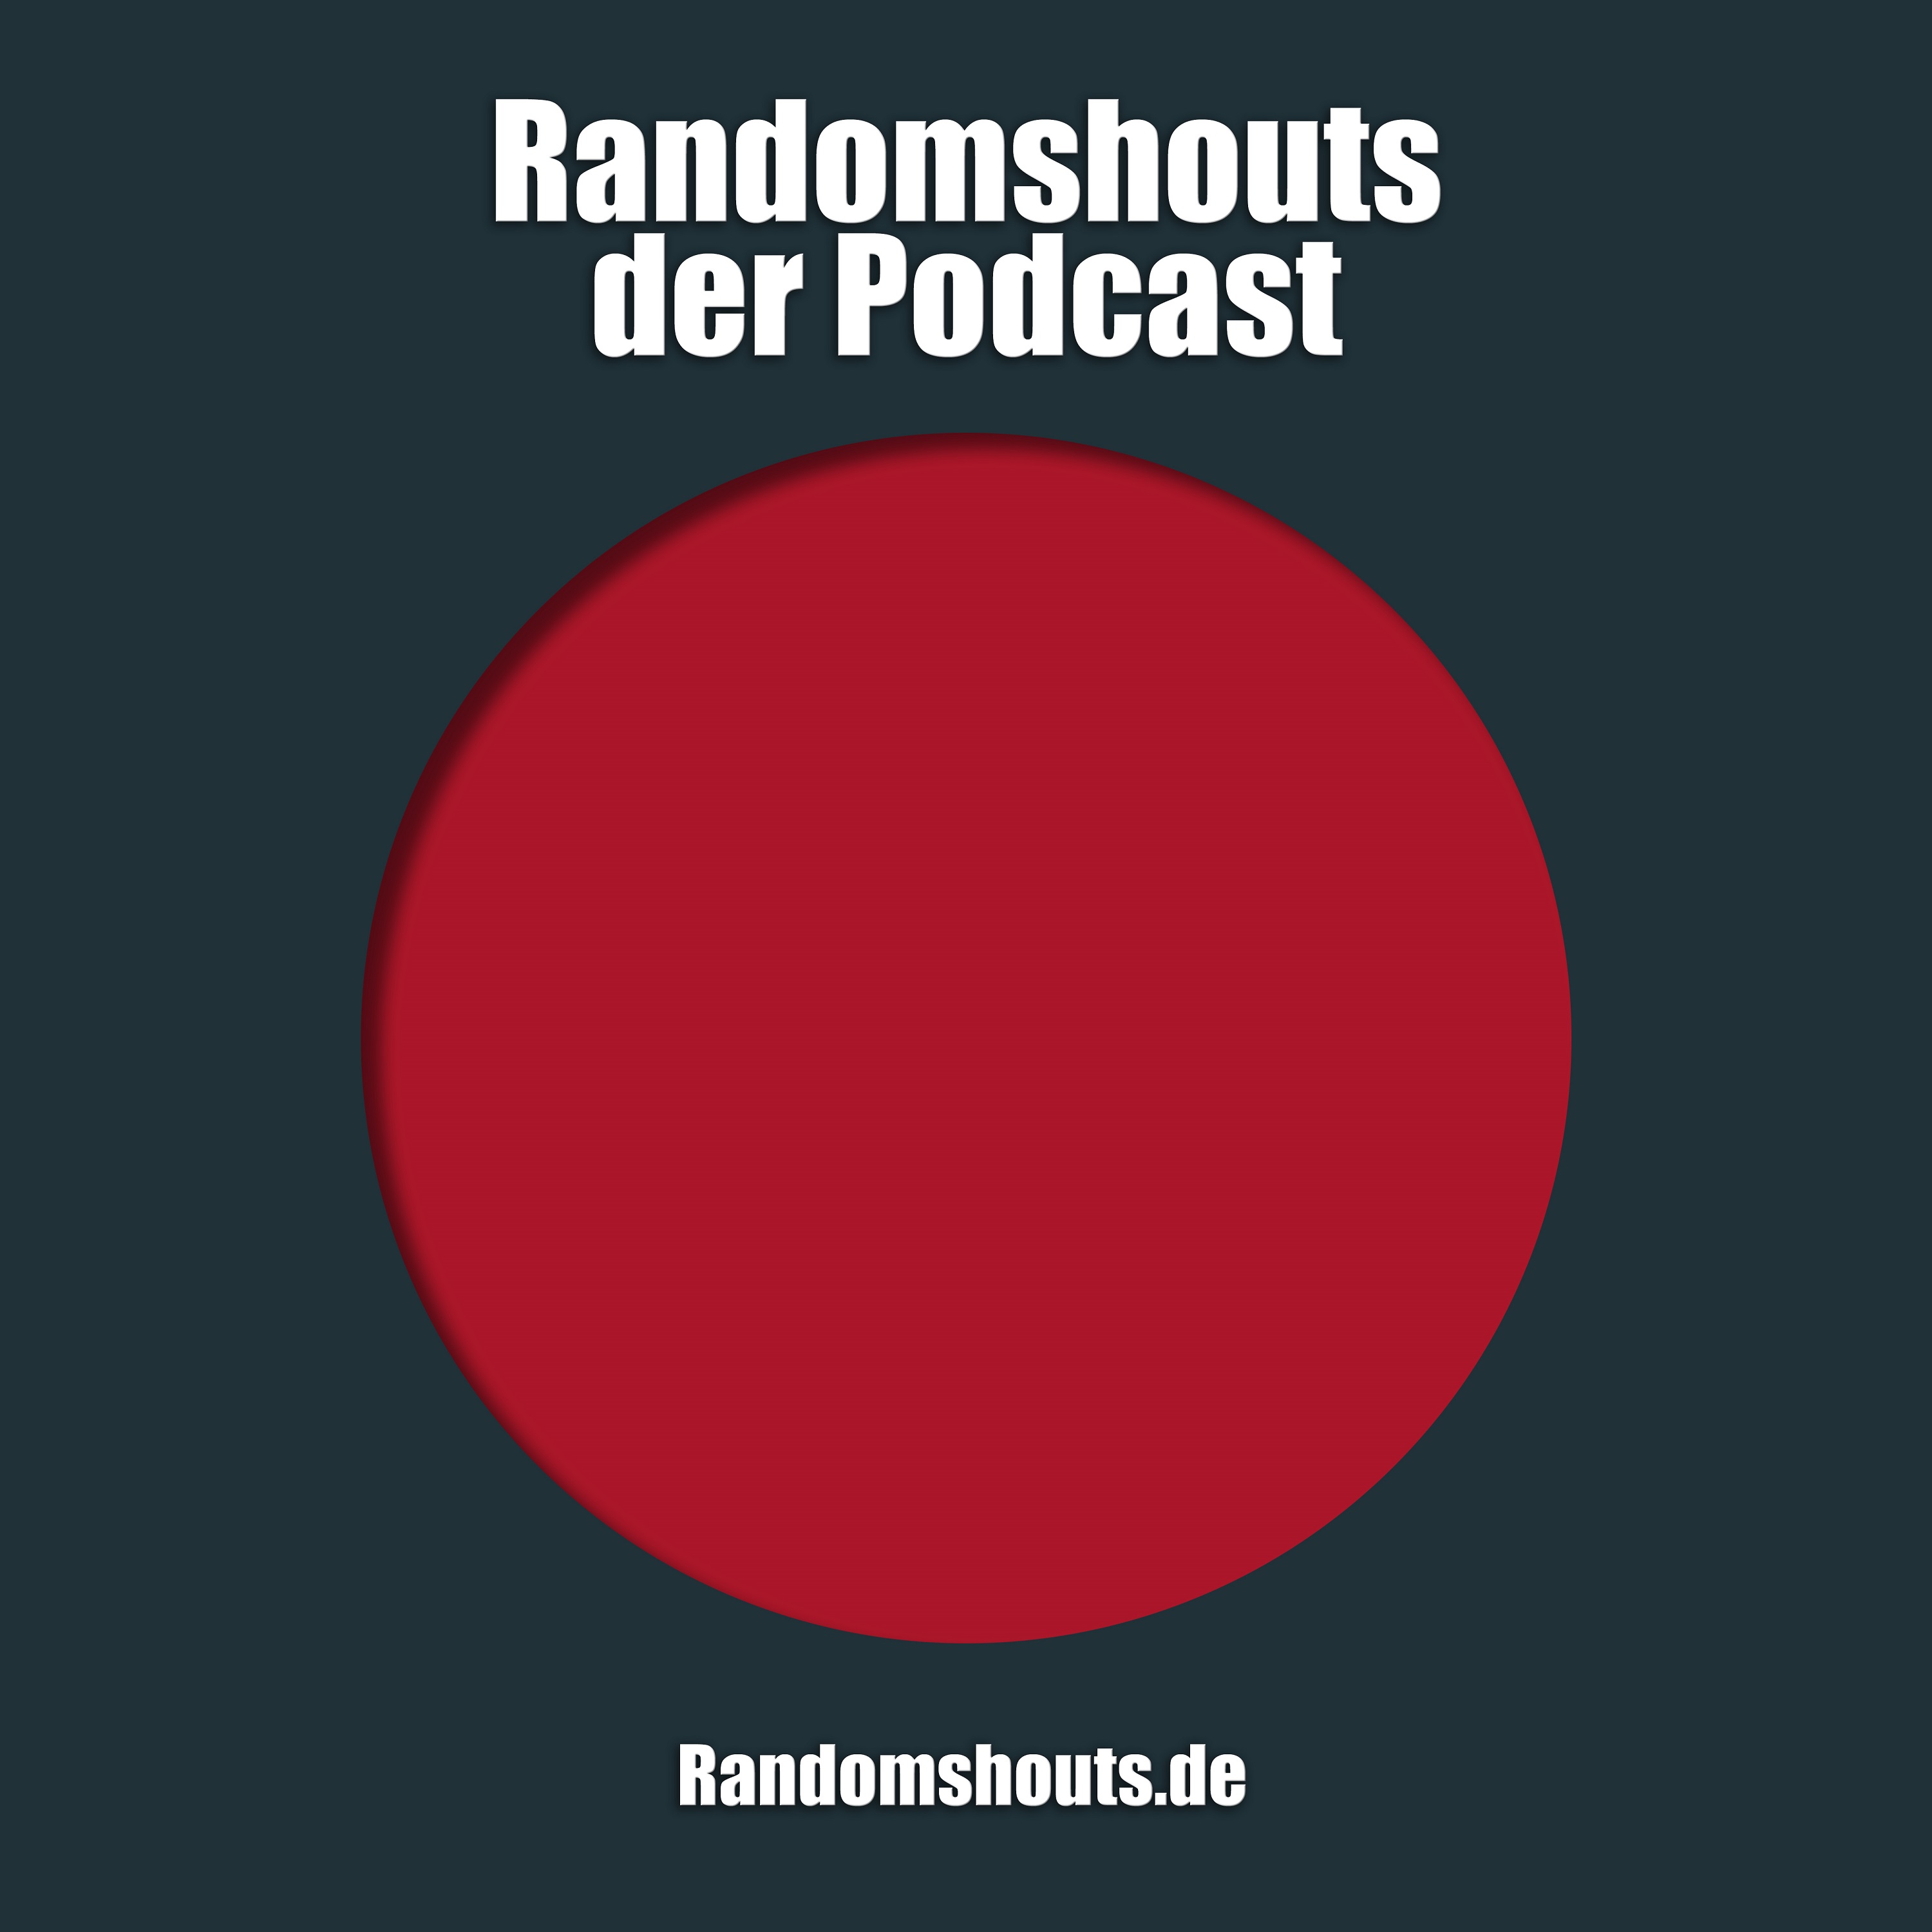 Randomshouts der Podcast - Episode 38: Vom bohren, bumsen und verlieren